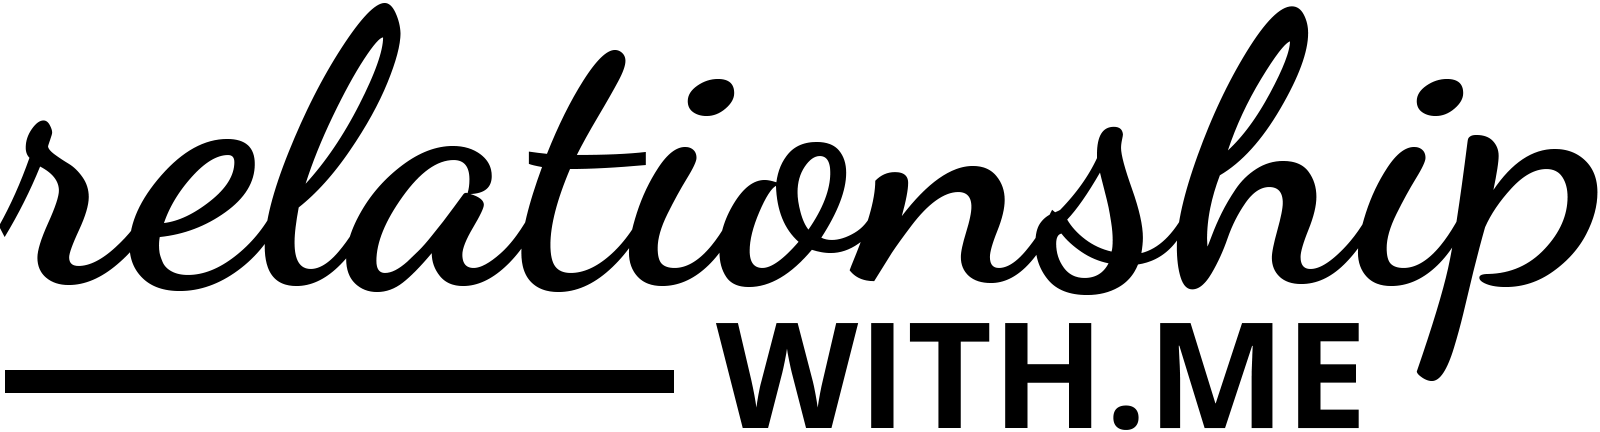 rwme-logo-schwarz